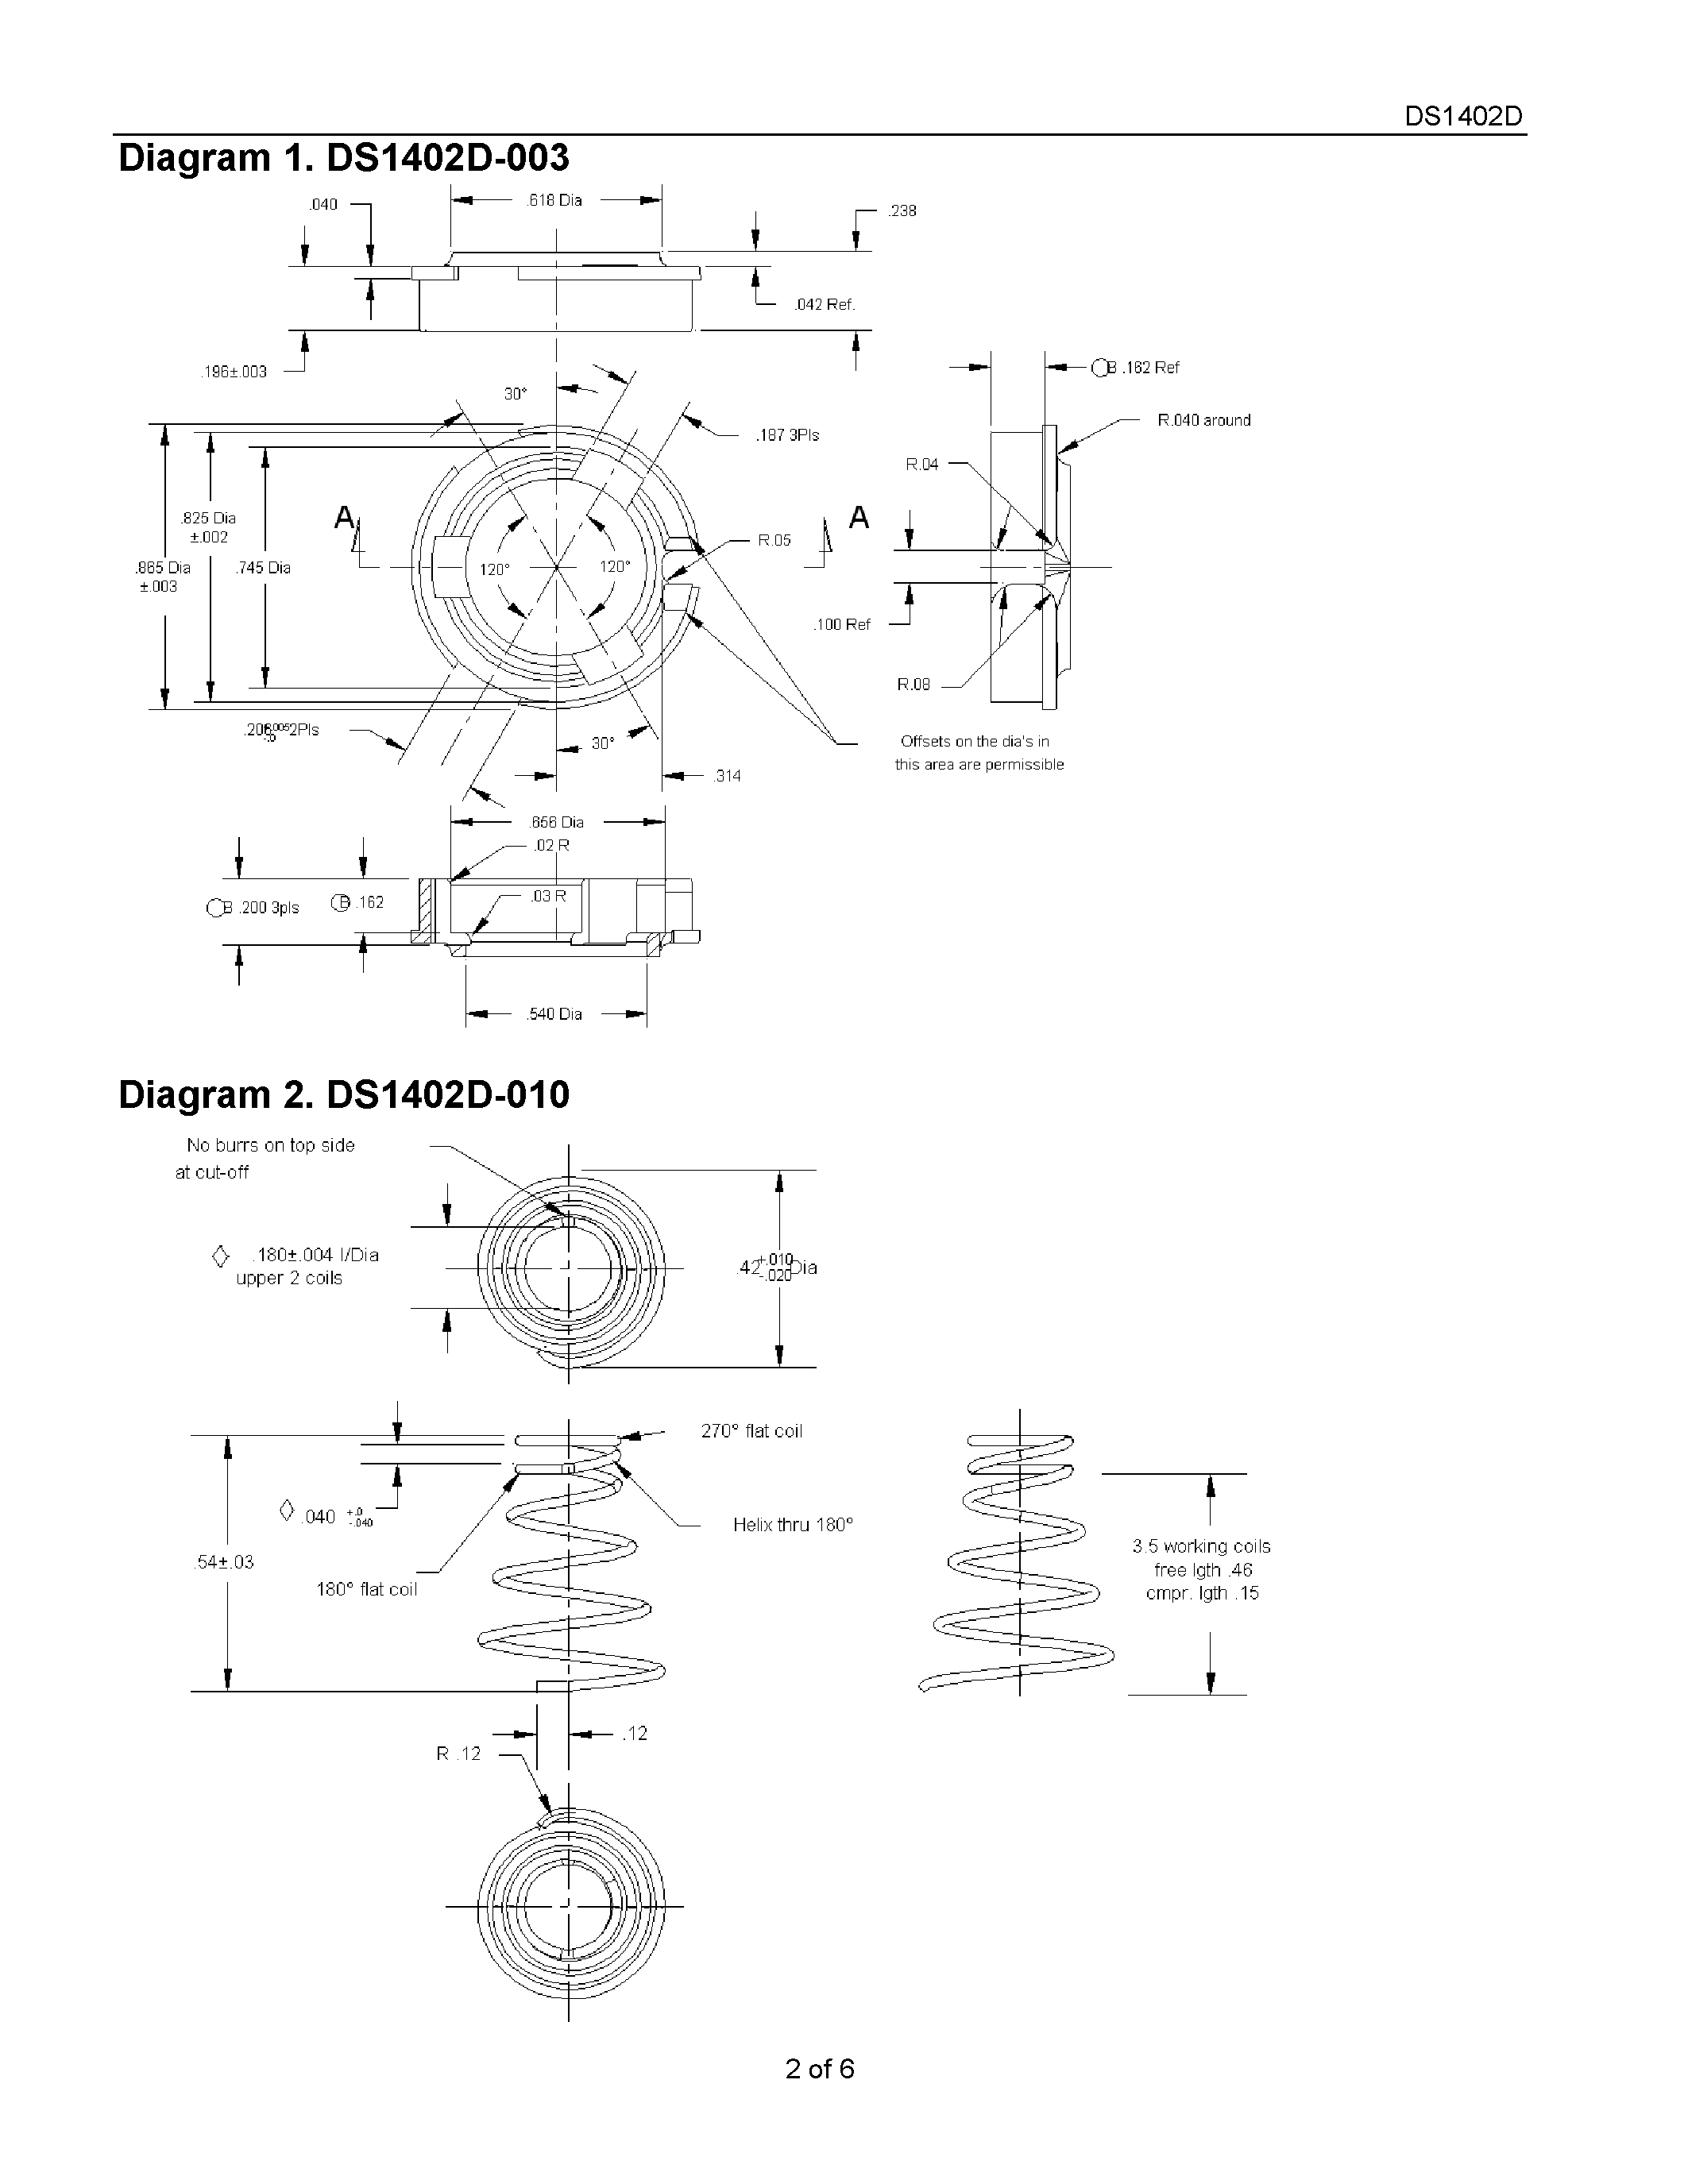 Даташит DS1402D-017 - iButton Probe Component Parts страница 2